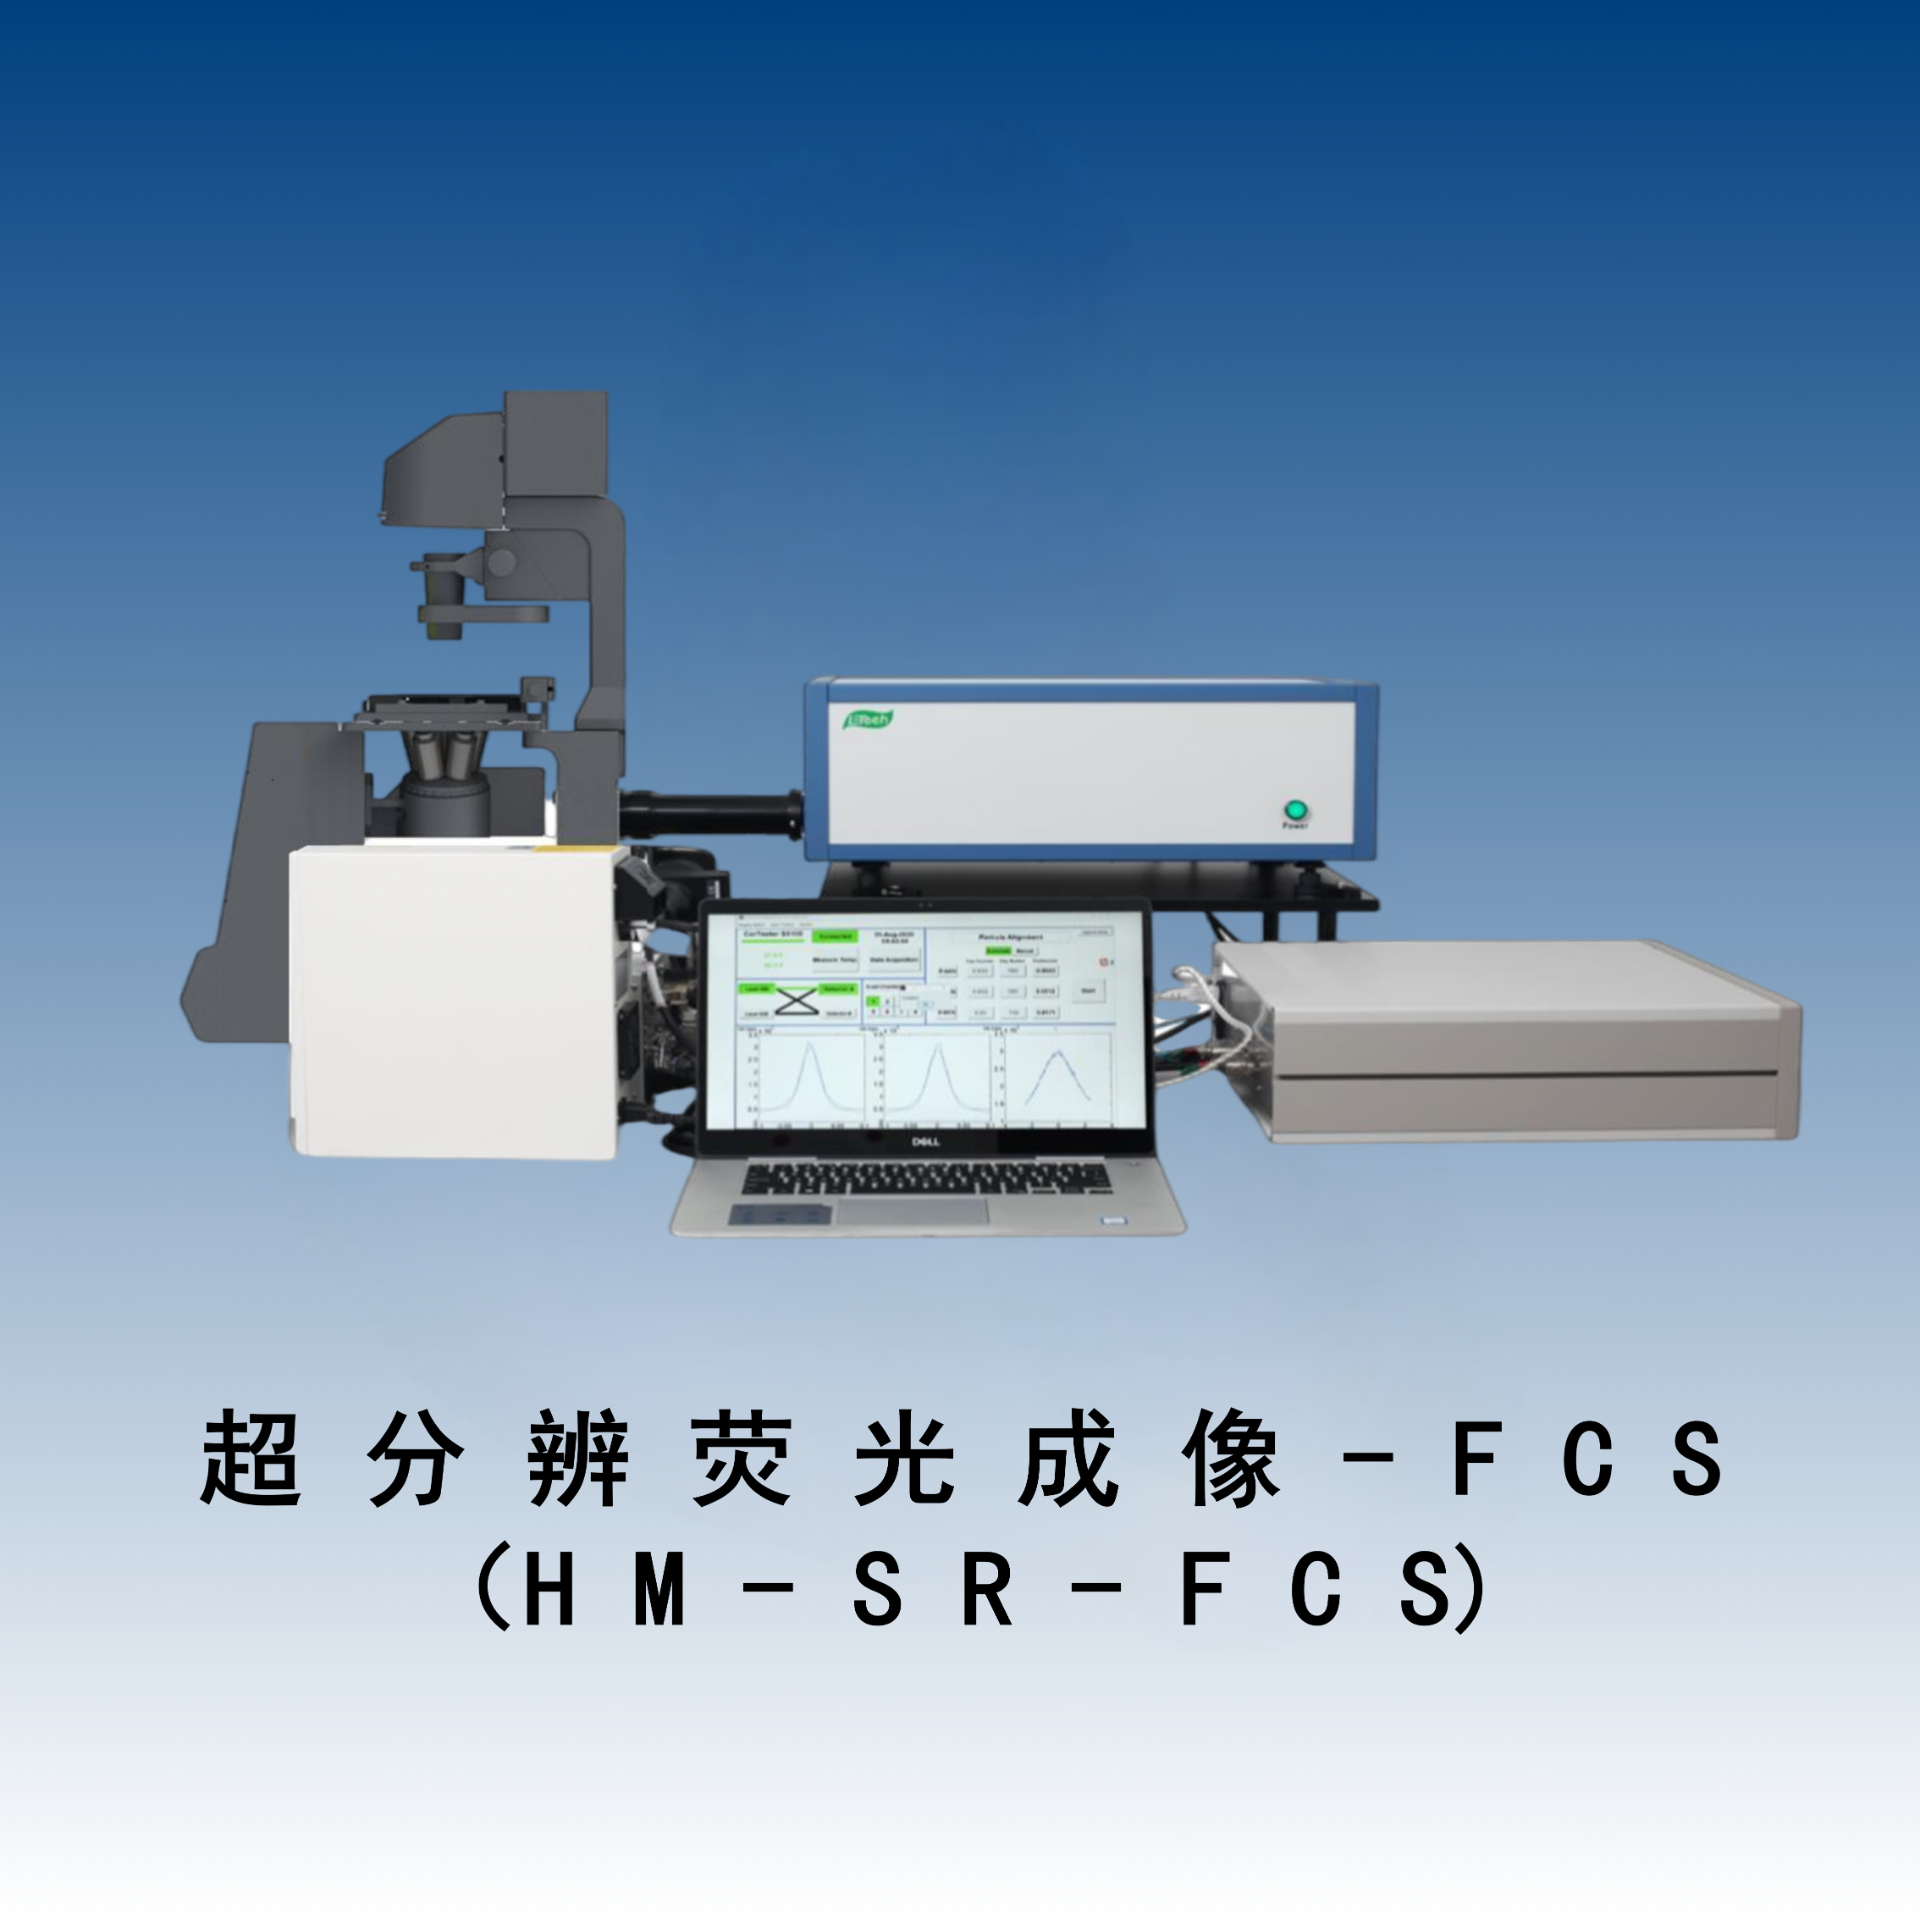 超分辨荧光成像-FCS（HM-SR-FCS）